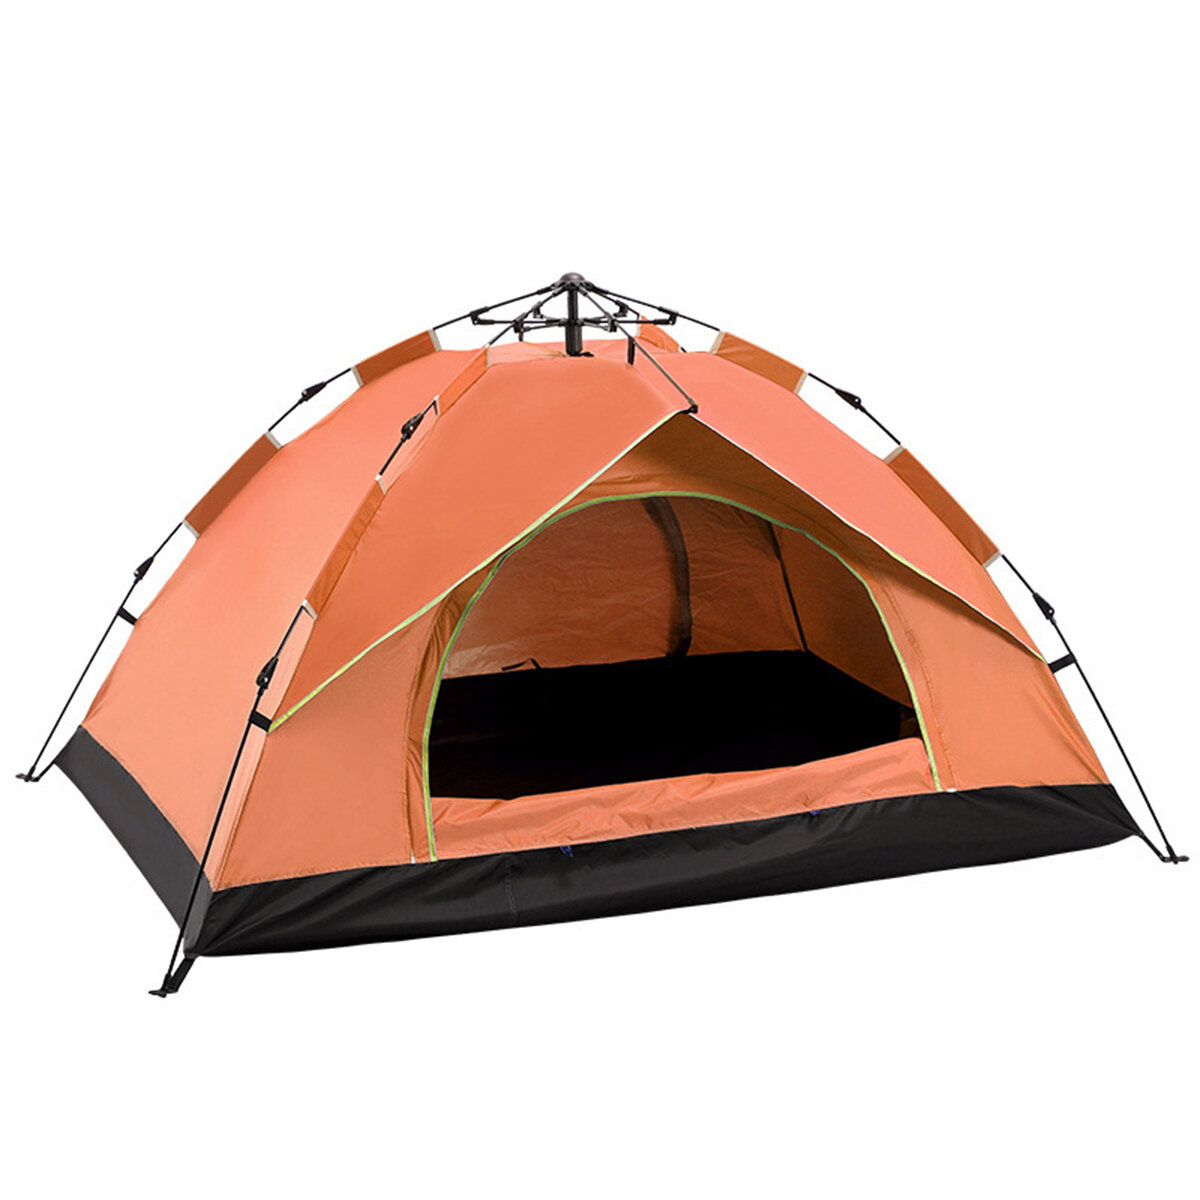 Tenda da campeggio automatica rapida per 3-4 persone, protezione UV e impermeabile per uso all'aperto.